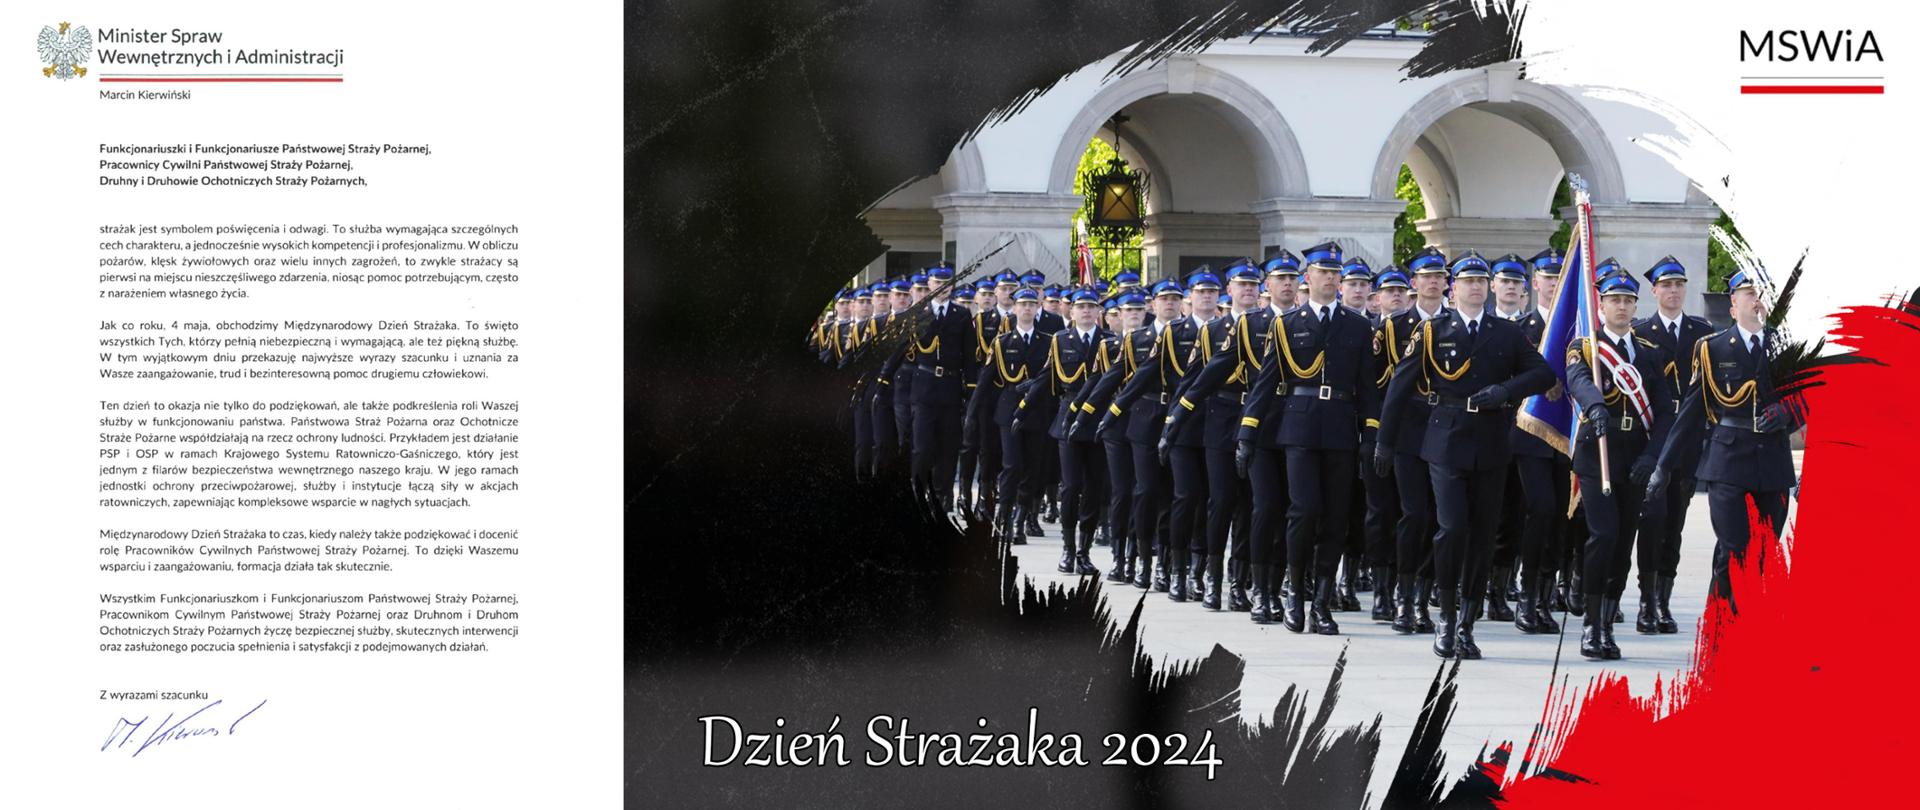 W lewej części zdjęcia widok pisma Ministra SWiA Marcina Kierwińskiego z życzeniami dla Strażaków. W centralnej części, na czarnym tle widok kompanii honorowej PSP. Po prawej tło zmienia się na kolory flagi Polski - biało-czerwone. Na białym tle napis "MSWiA"